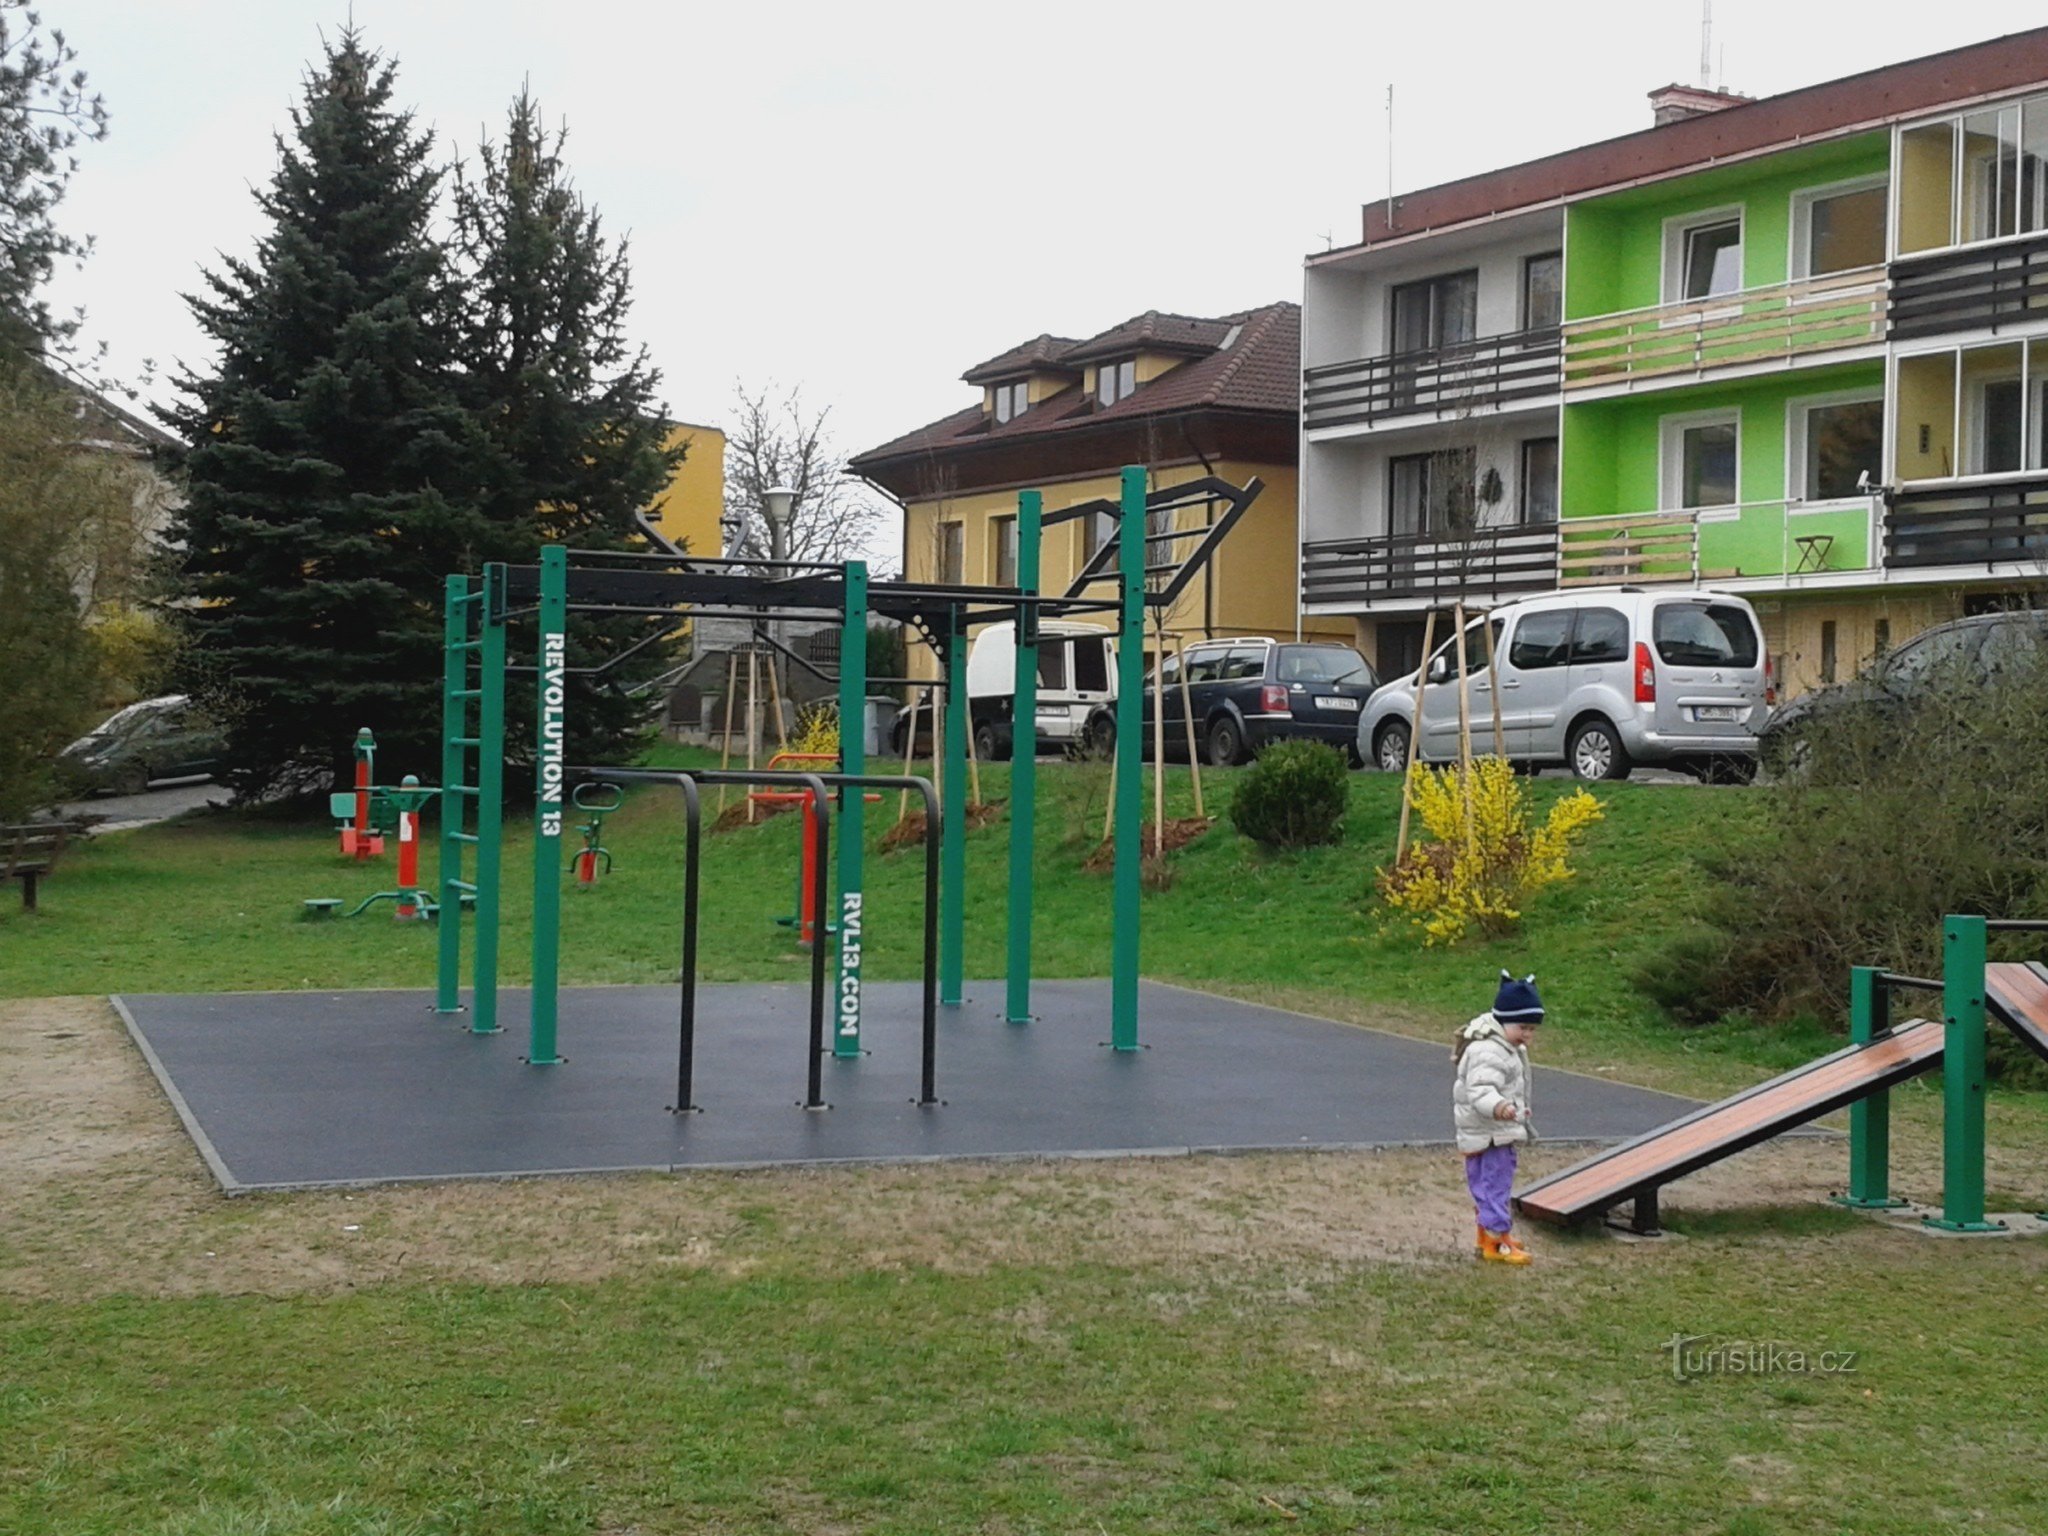 Zábřeh - playground de exercícios para pessoas ativas (15-99 anos)